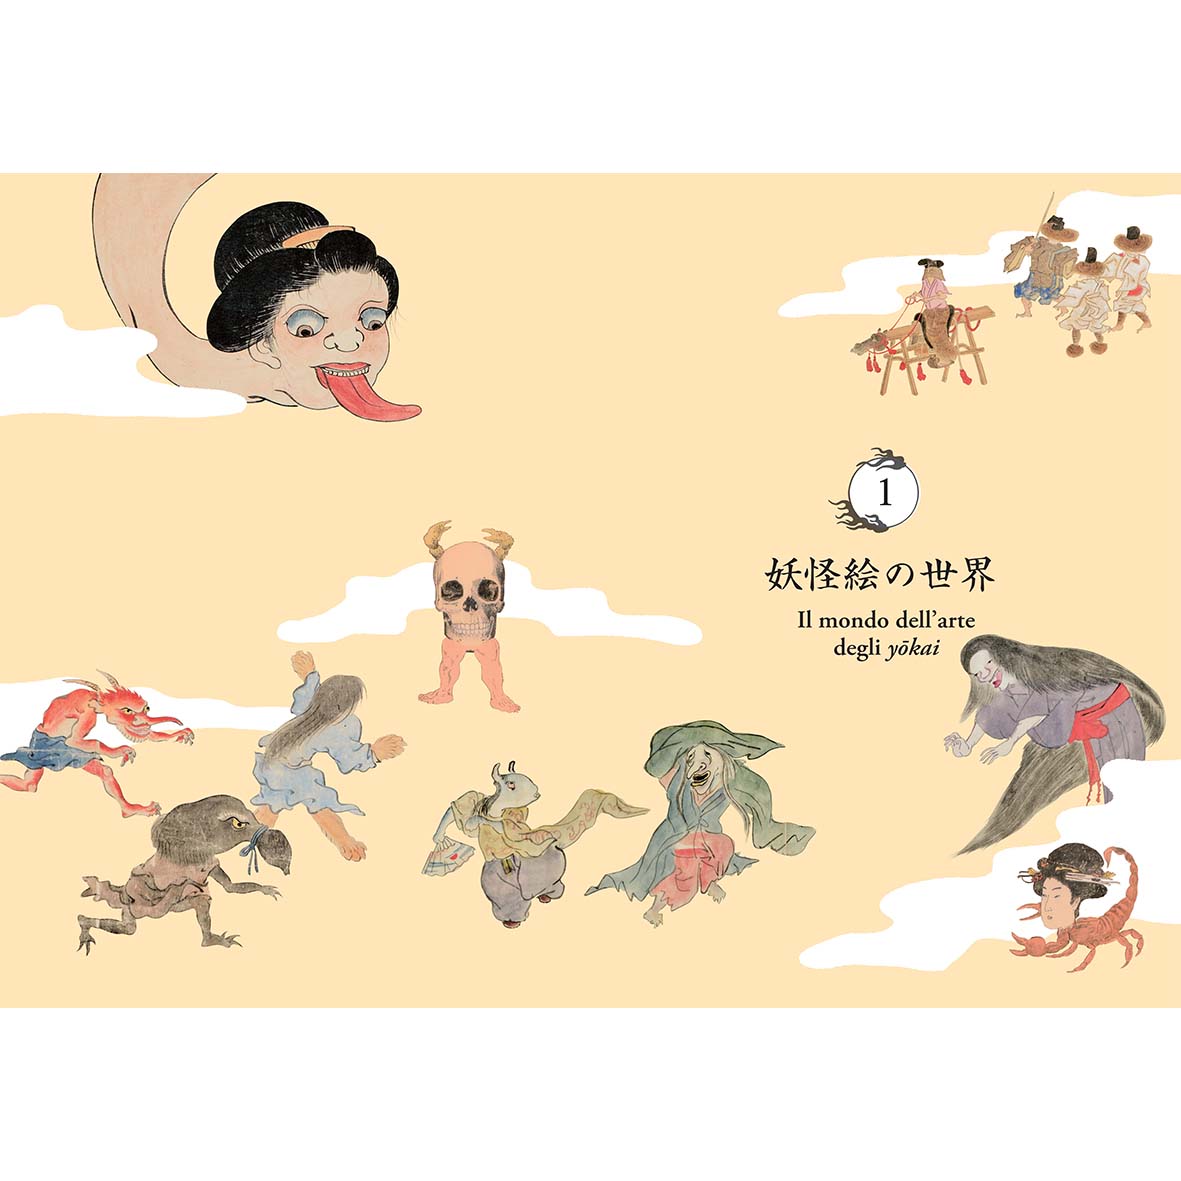 Il Regno degli Yōkai - Nuove opere d'arte dalla Yumoto Kōichi Collection